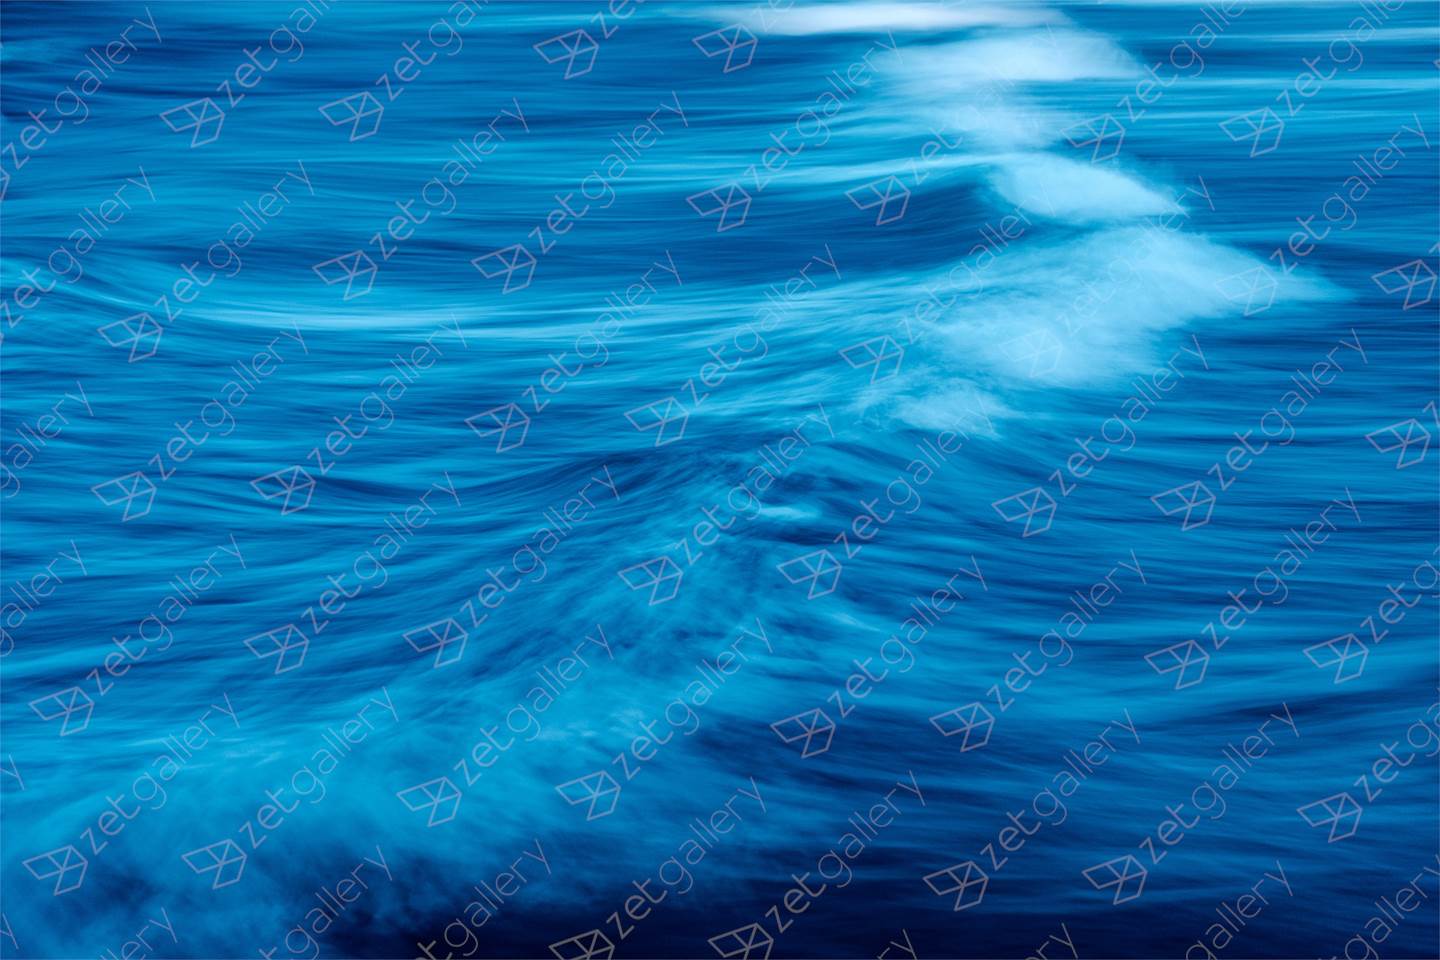 BLUE WAVE, Small Edition 1 of 15, original Resumen Digital Fotografía de Benjamin Lurie